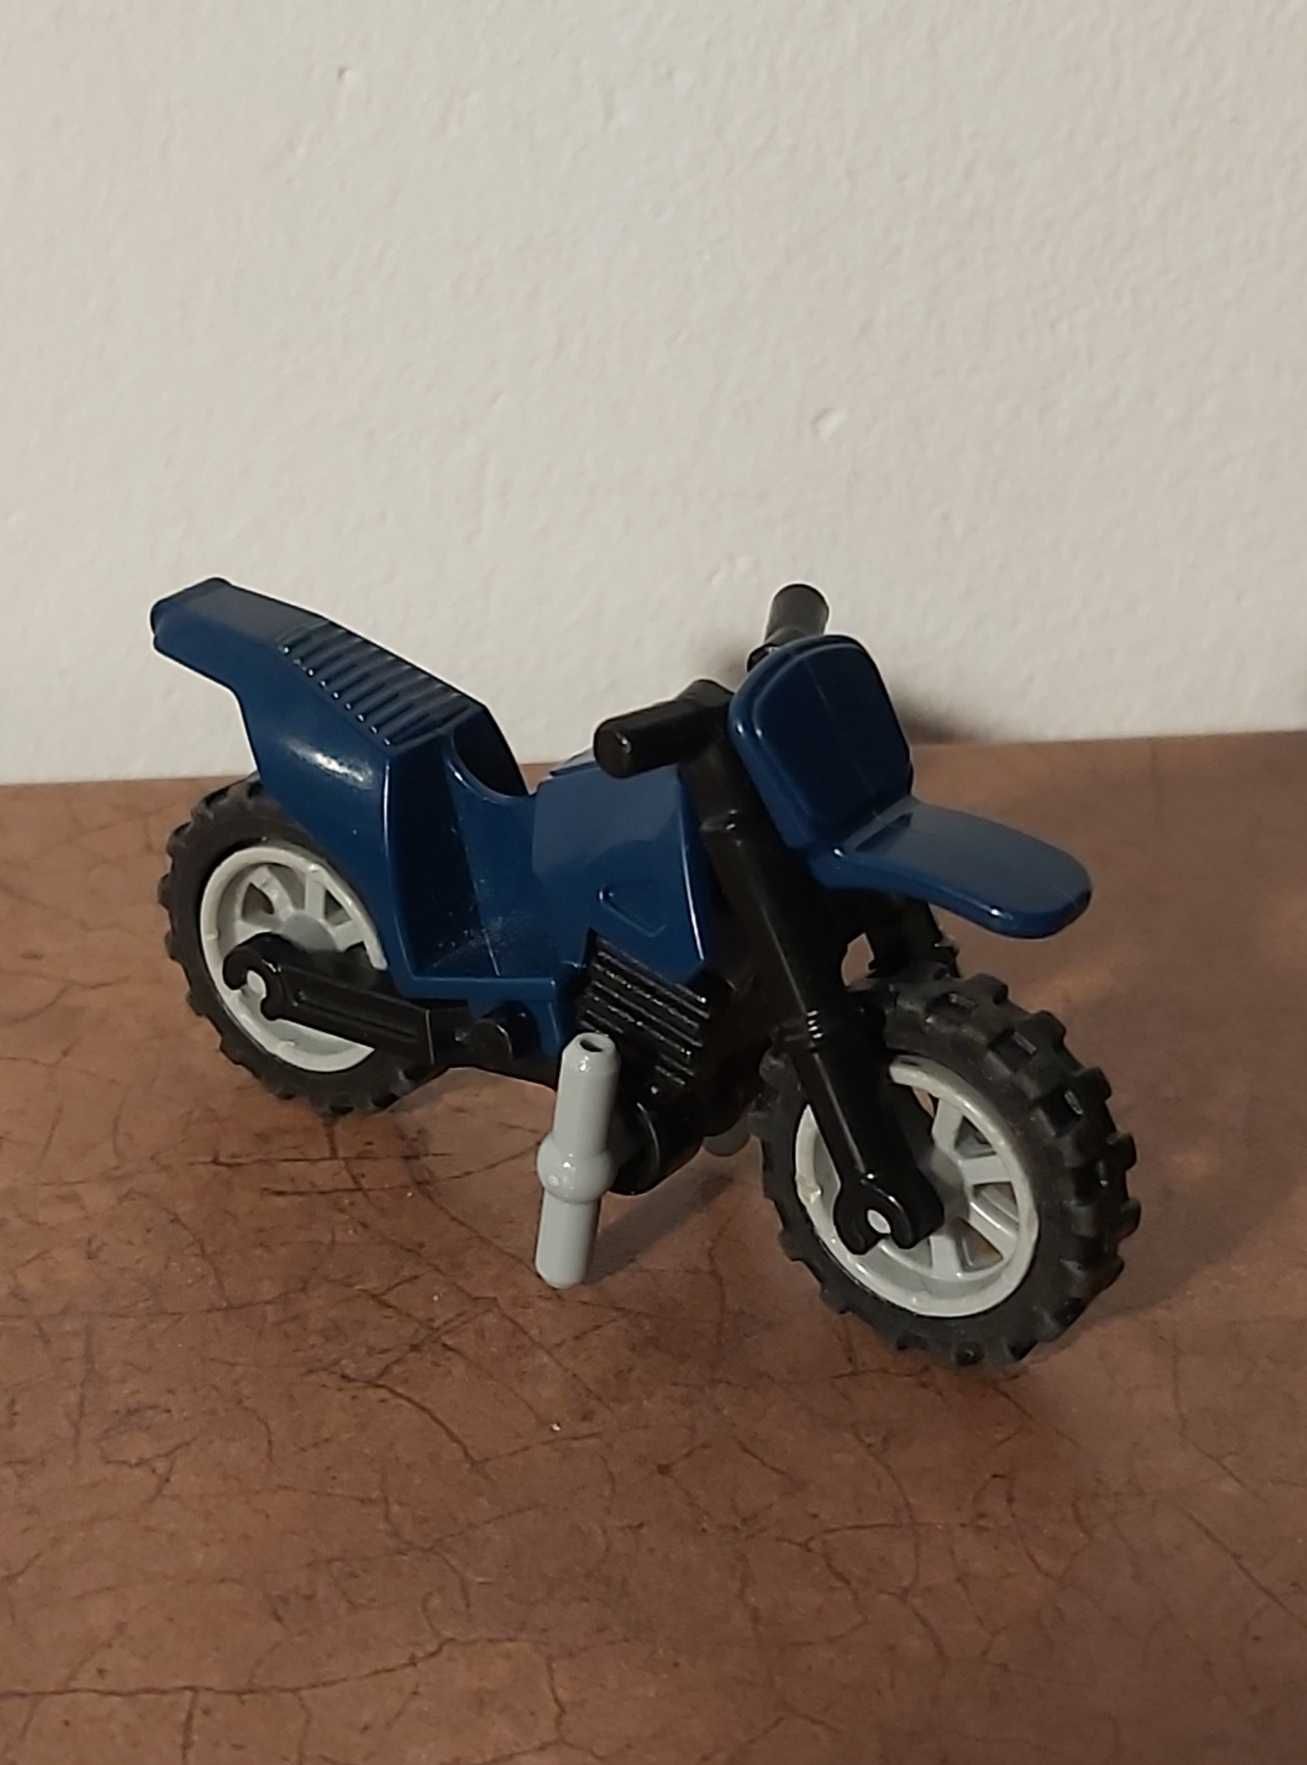 Lego City motocykl granatowy